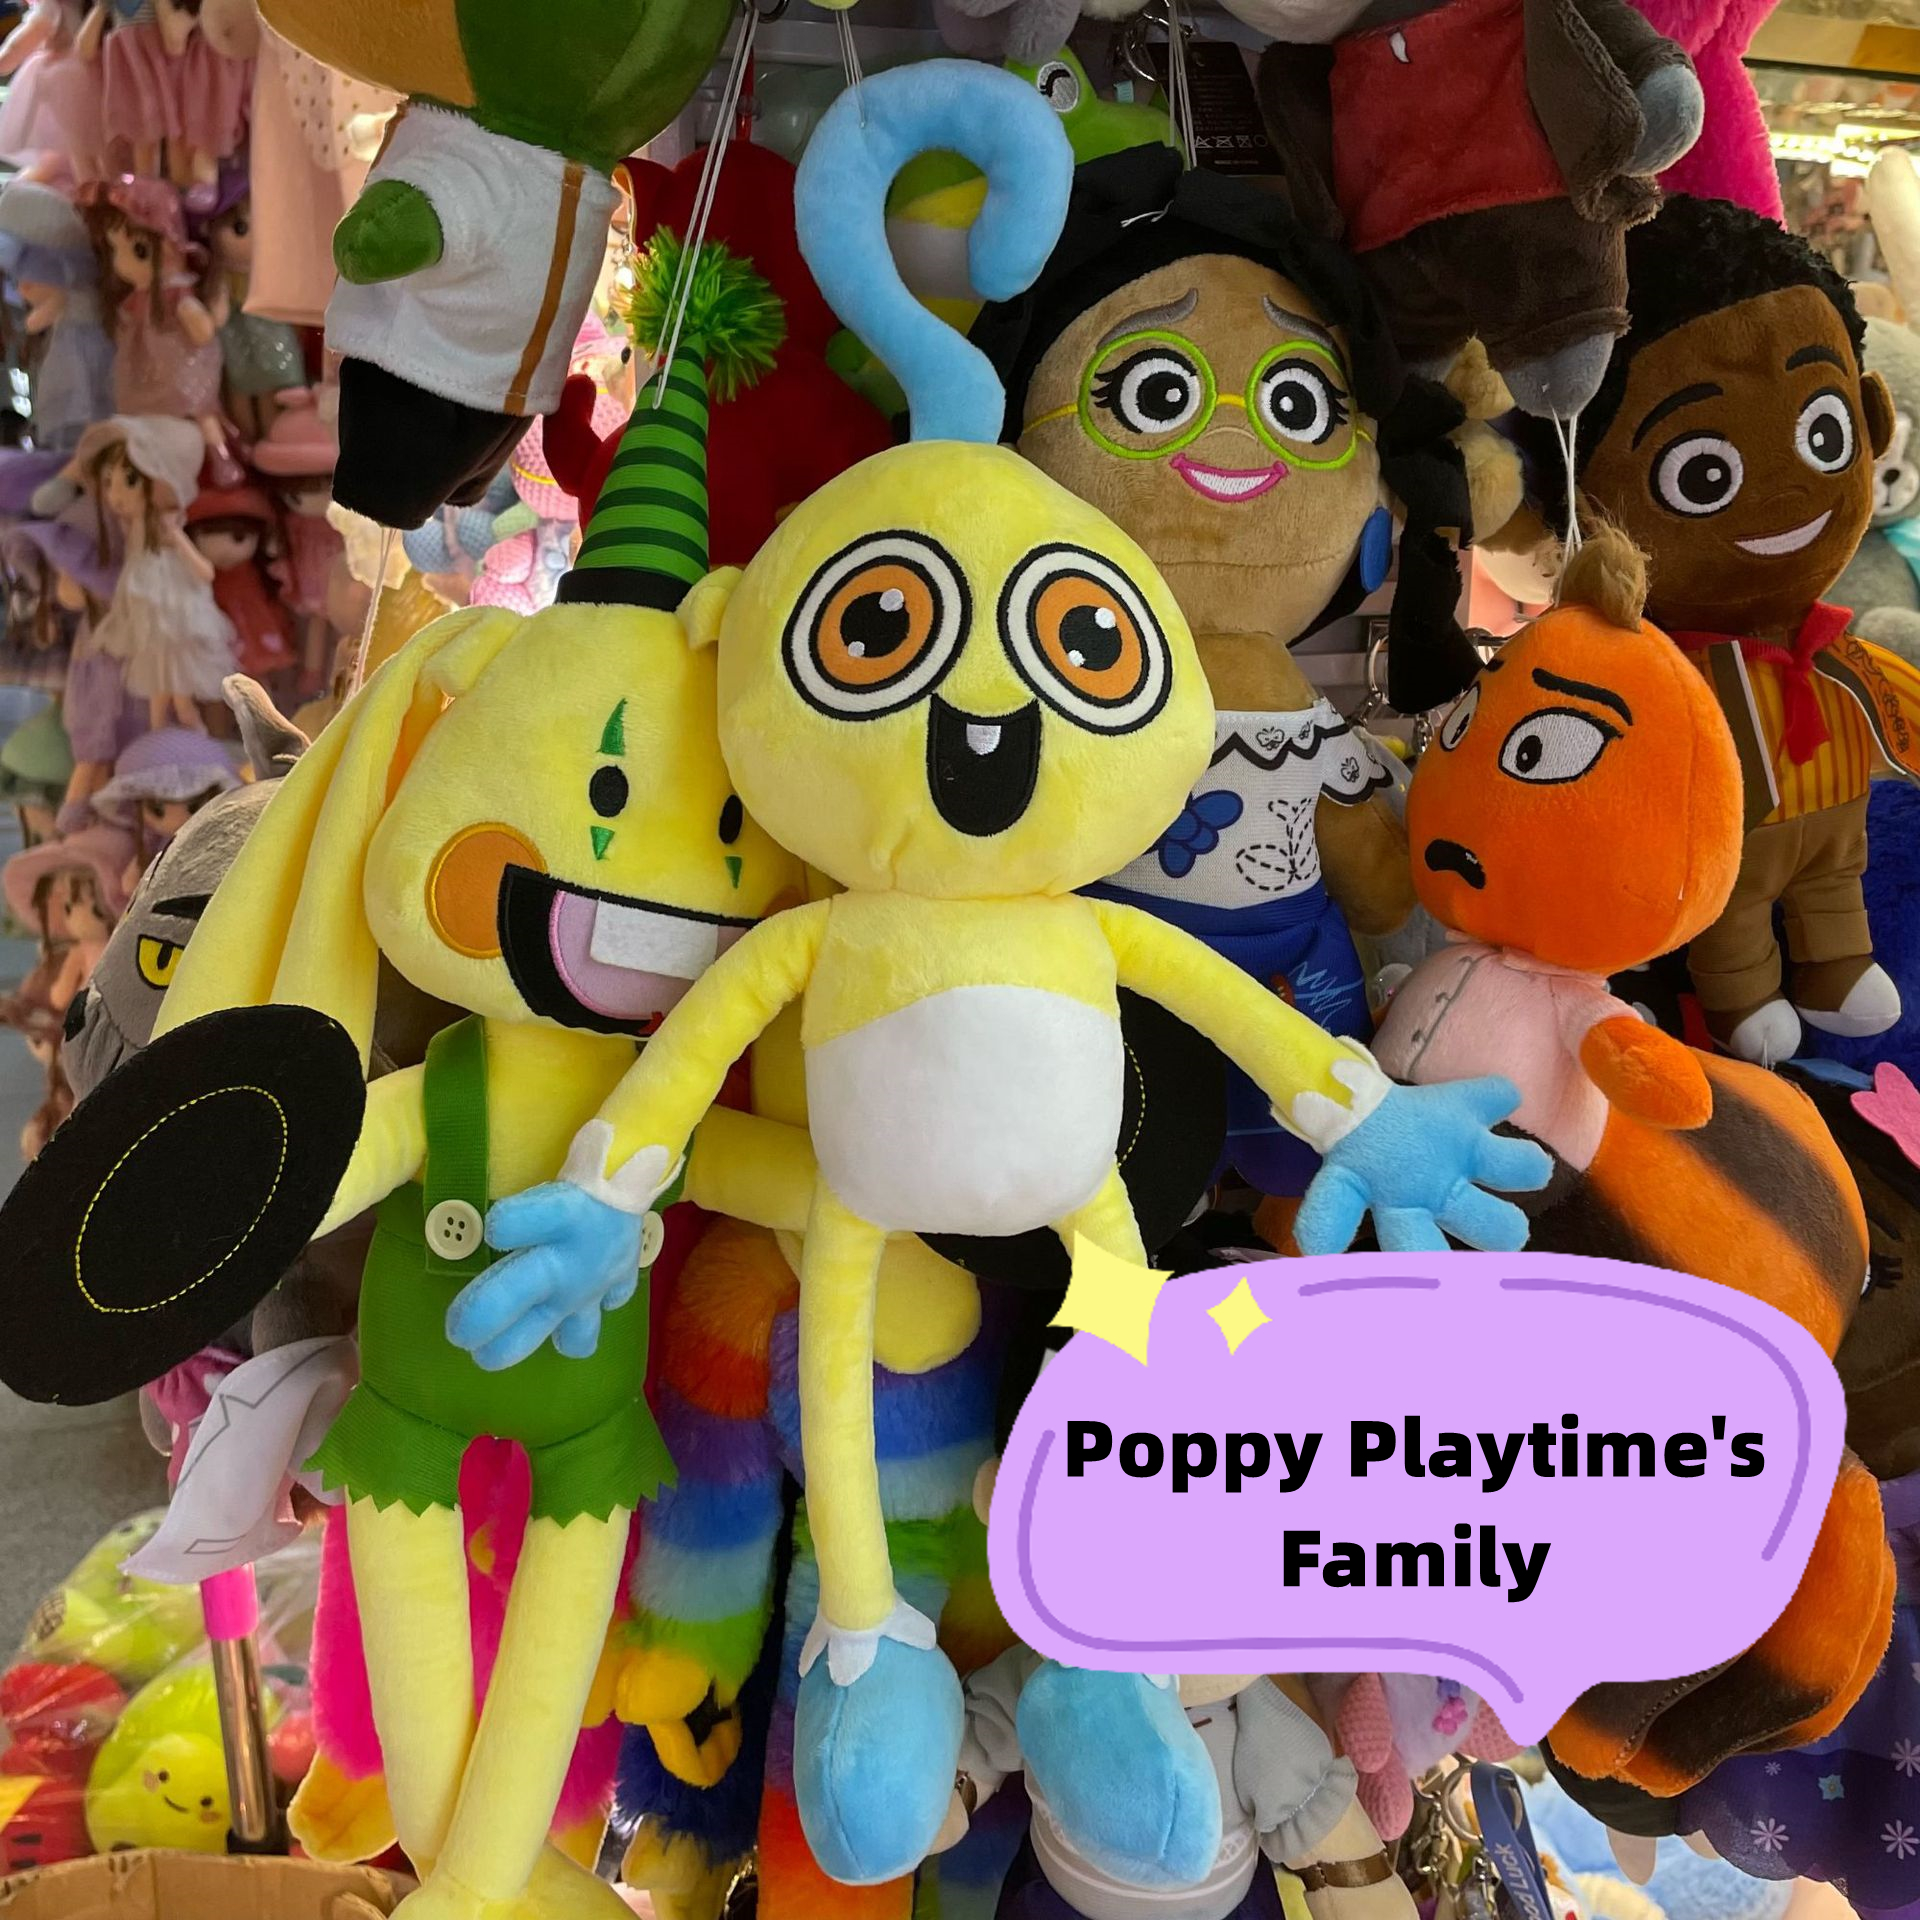 Mommy Long Leg Plush Toy 10 ~15 Inches, Poppy Playtime